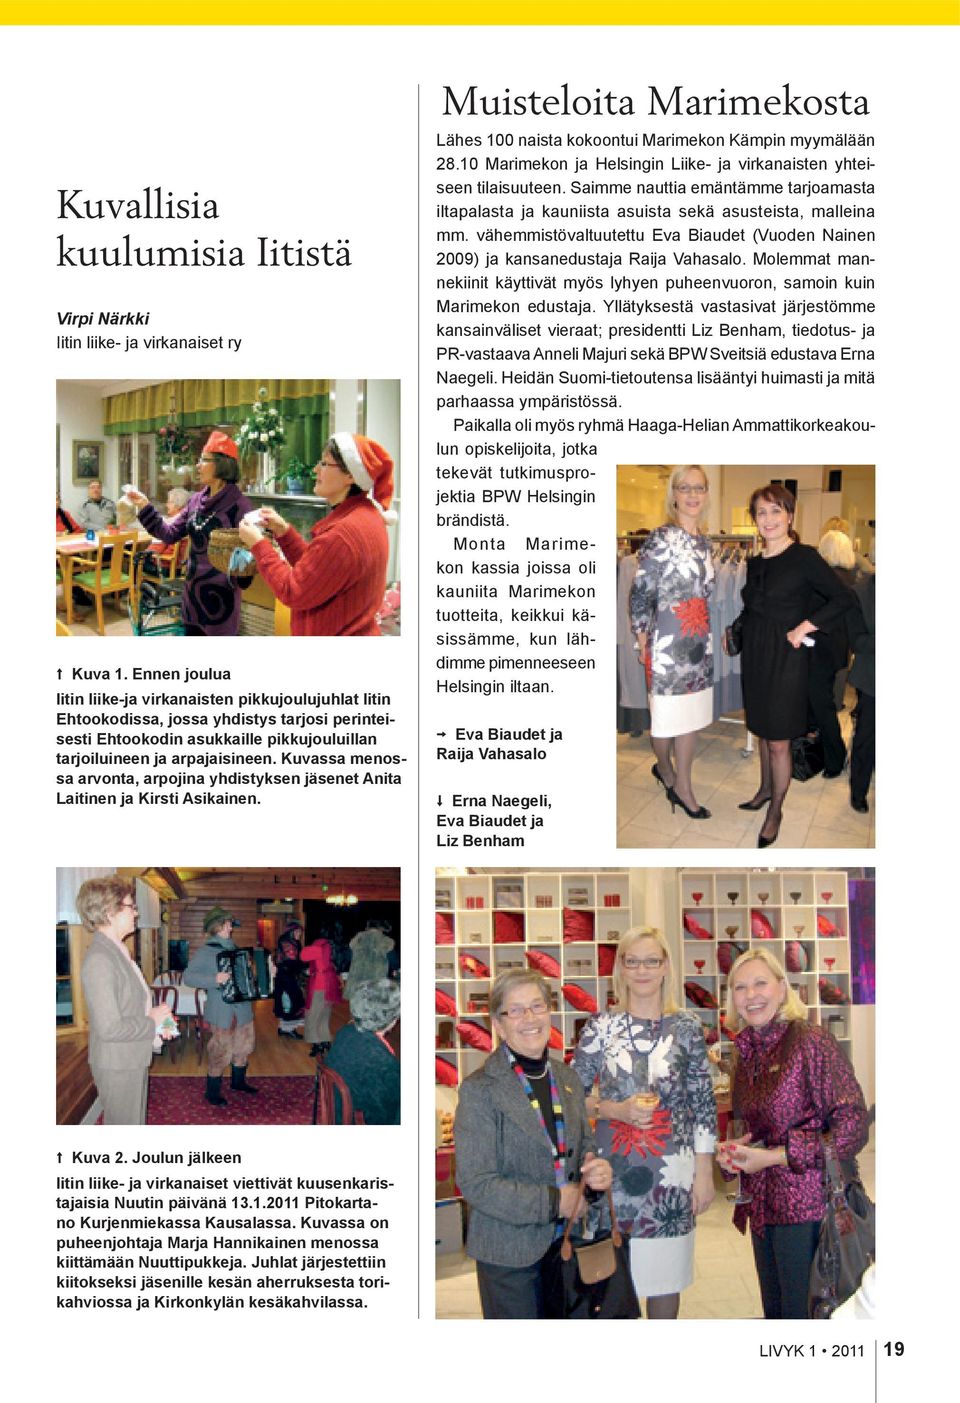 Kuvassa menossa arvonta, arpojina yhdistyksen jäsenet Anita Laitinen ja Kirsti Asikainen. Muisteloita Marimekosta Lähes 100 naista kokoontui Marimekon Kämpin myymälään 28.